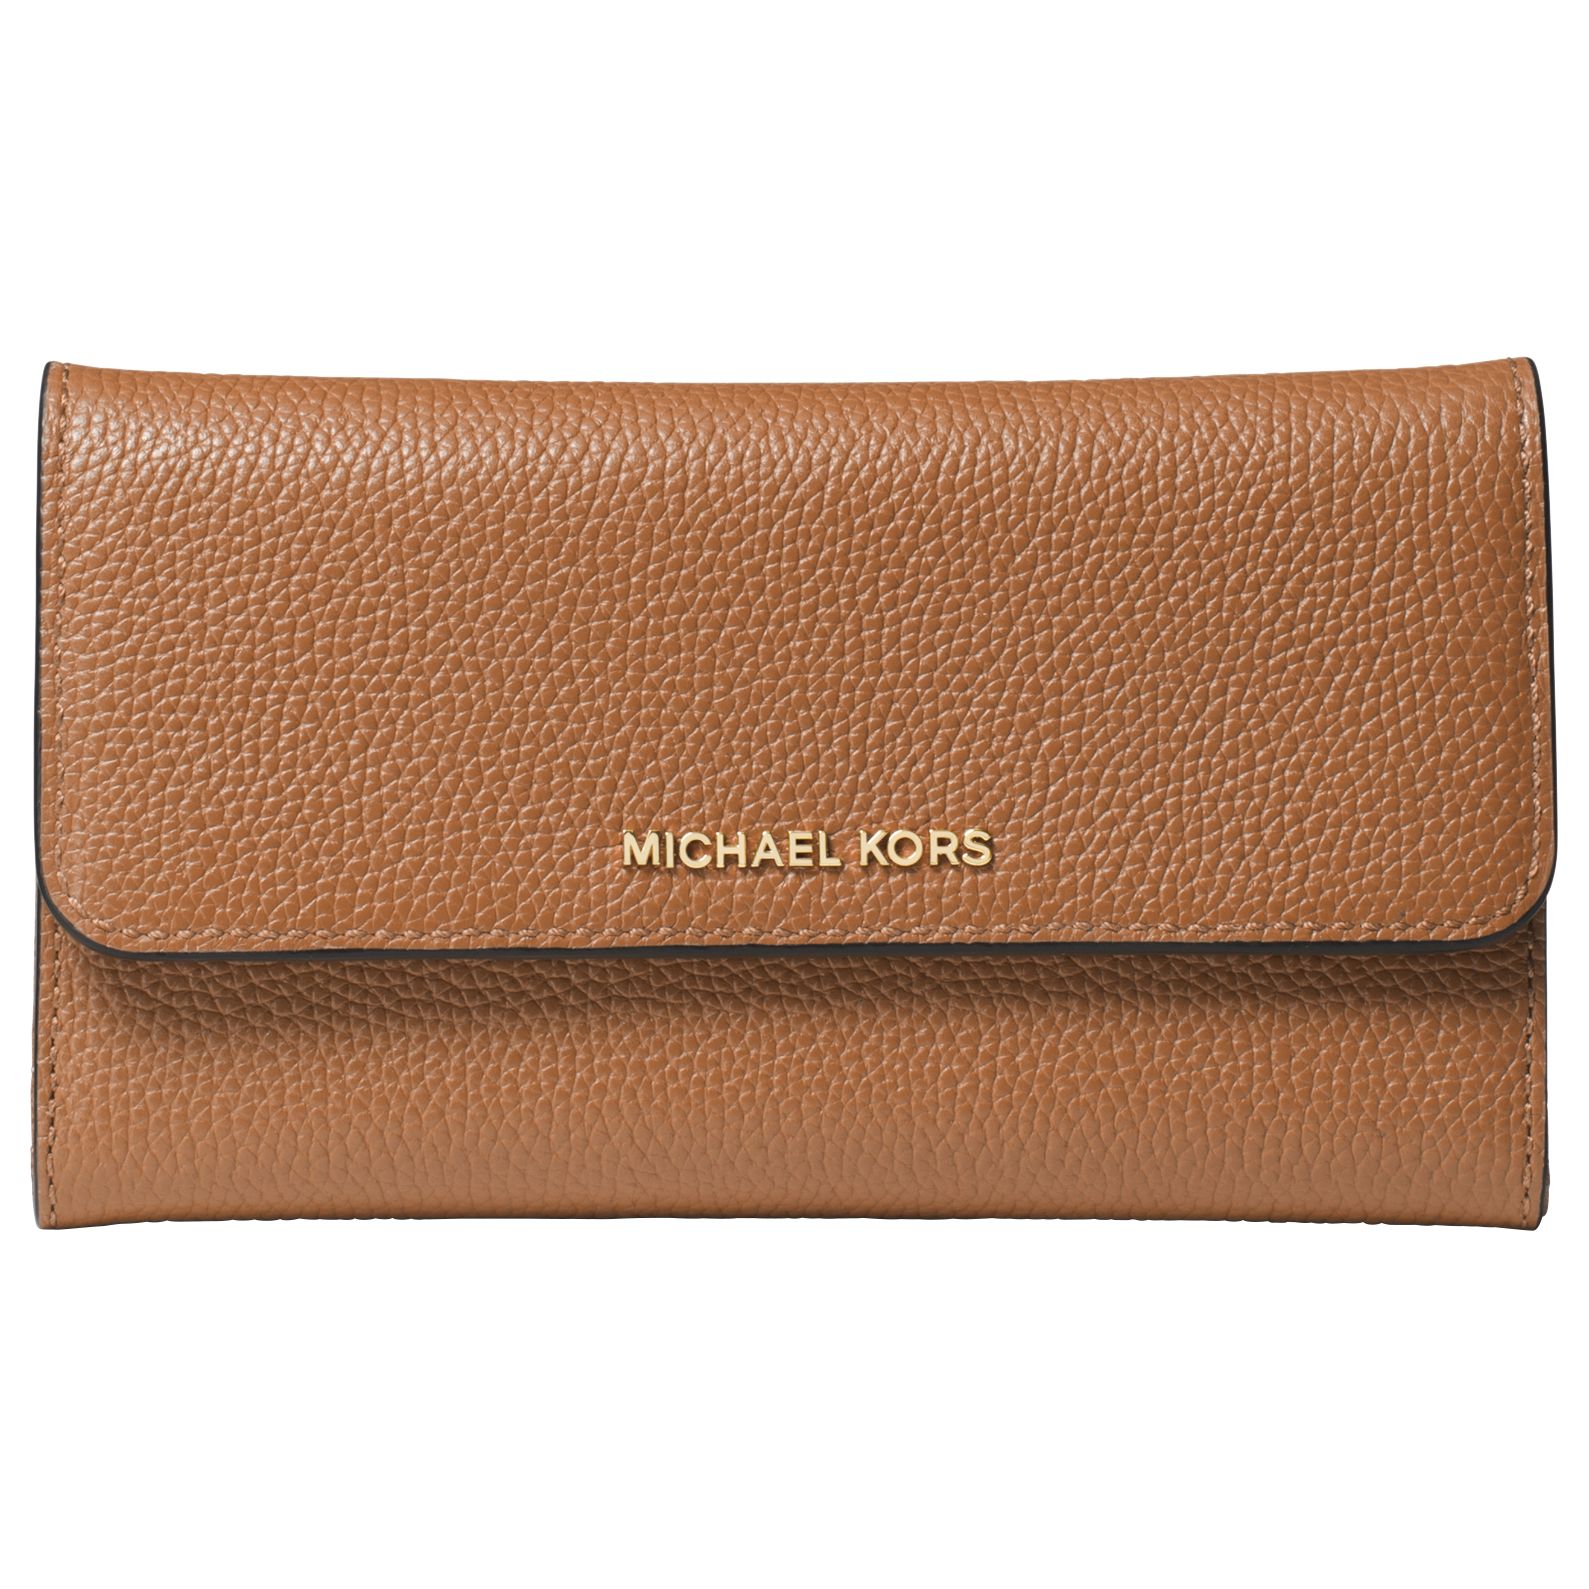 michael kors money pieces purse